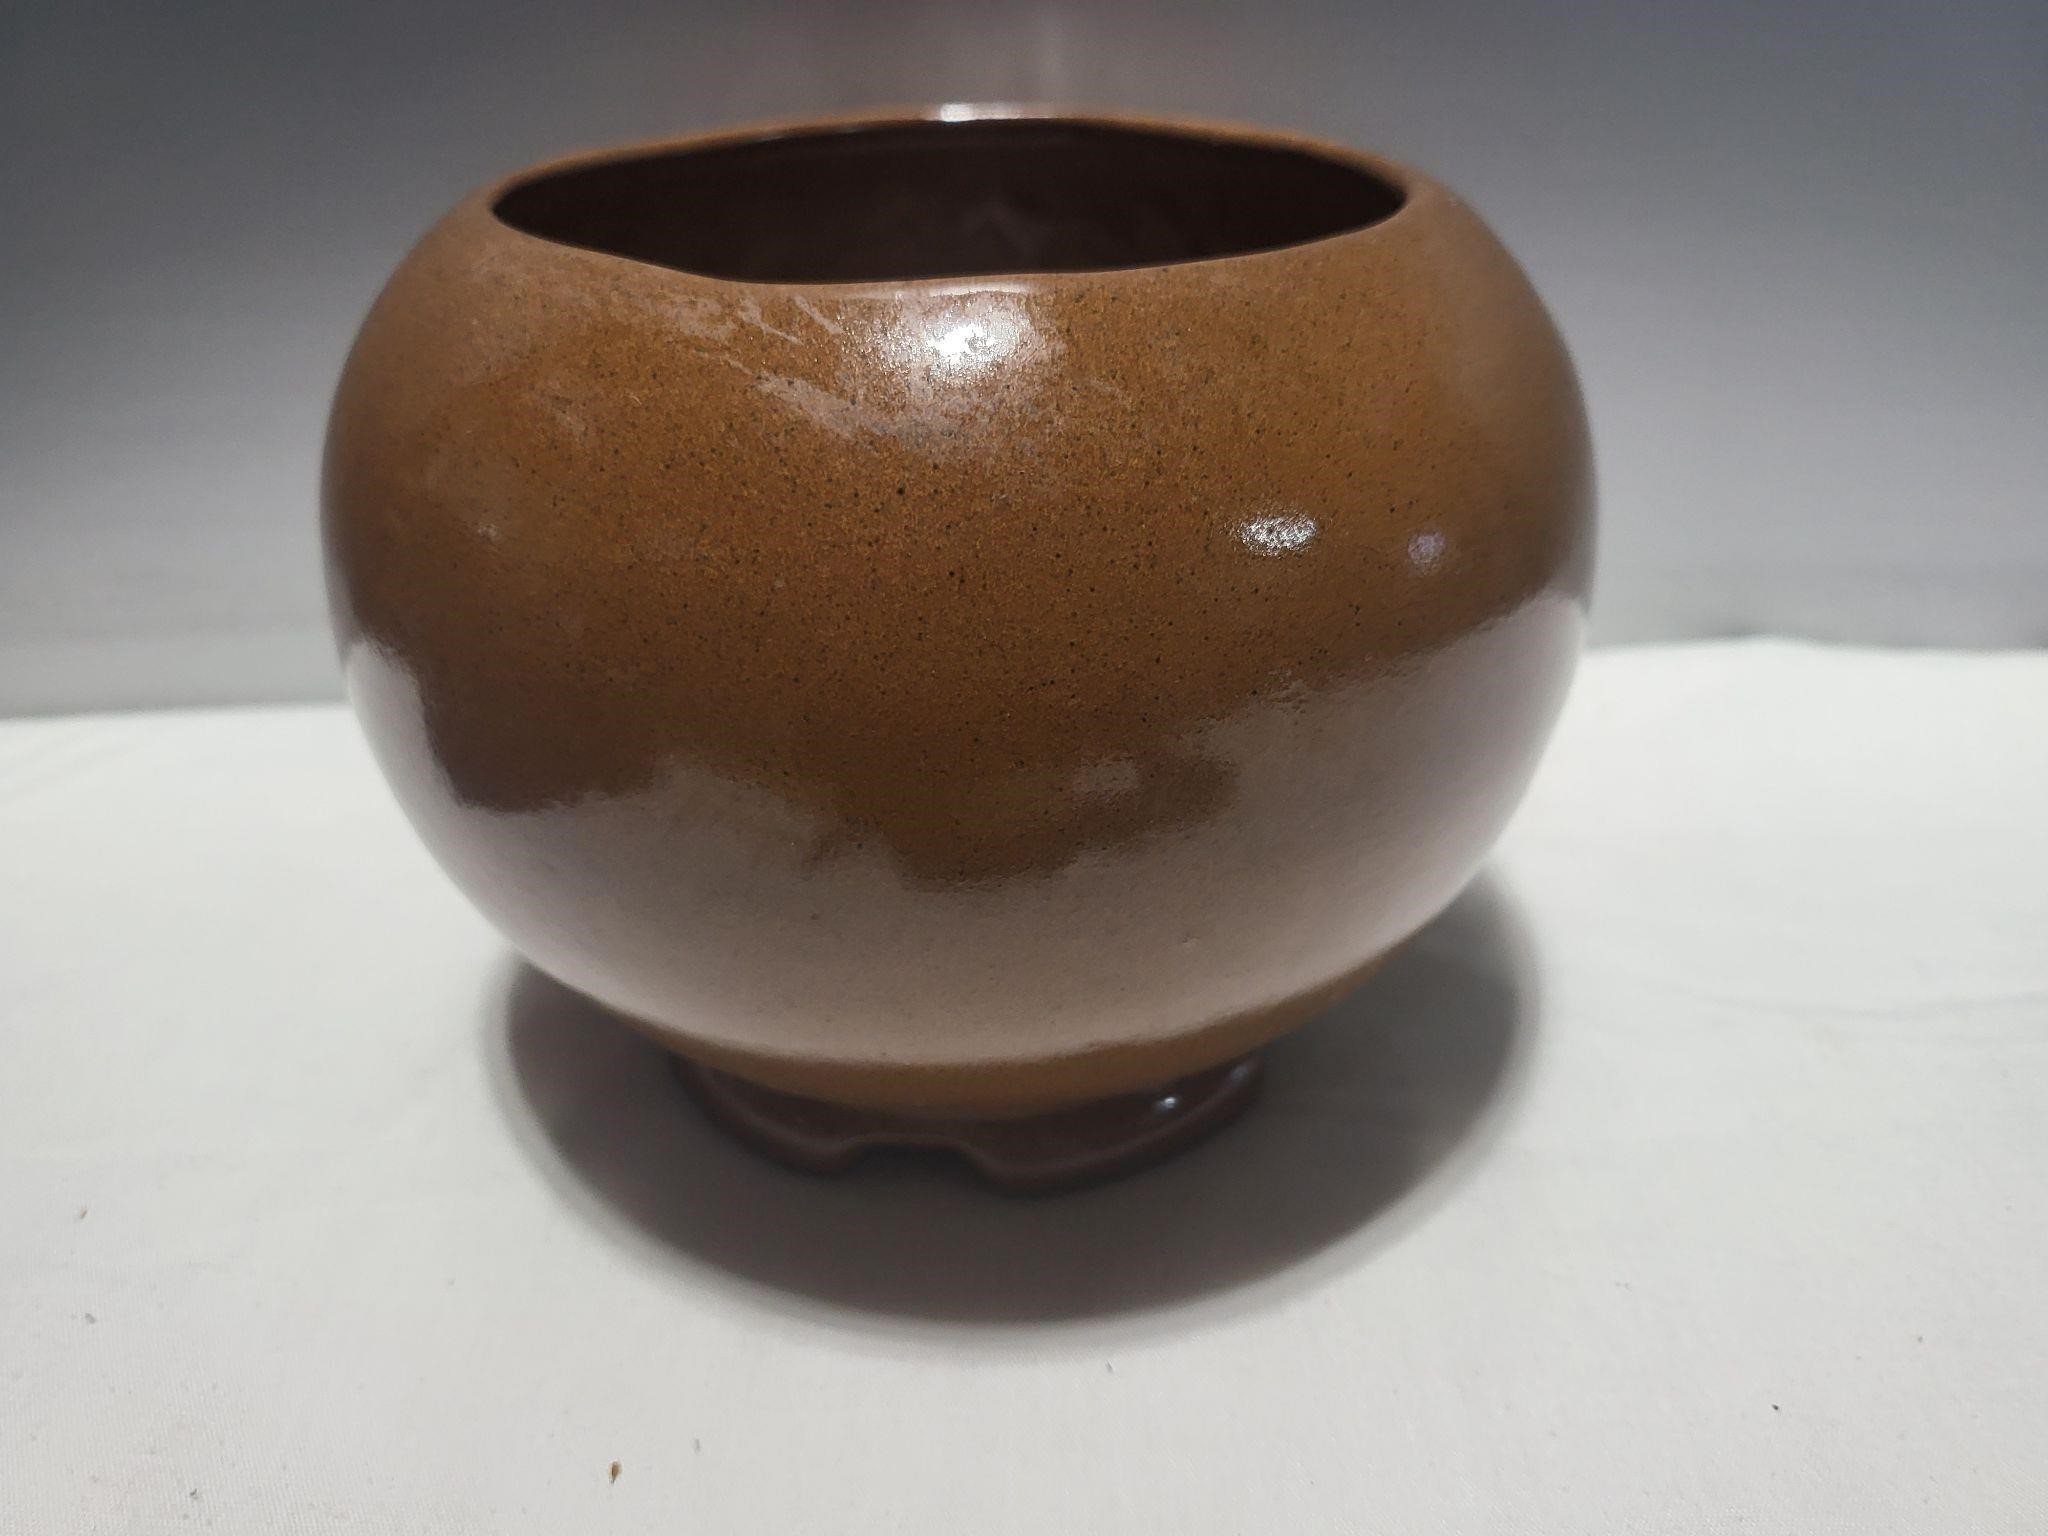 Gracetone pottery